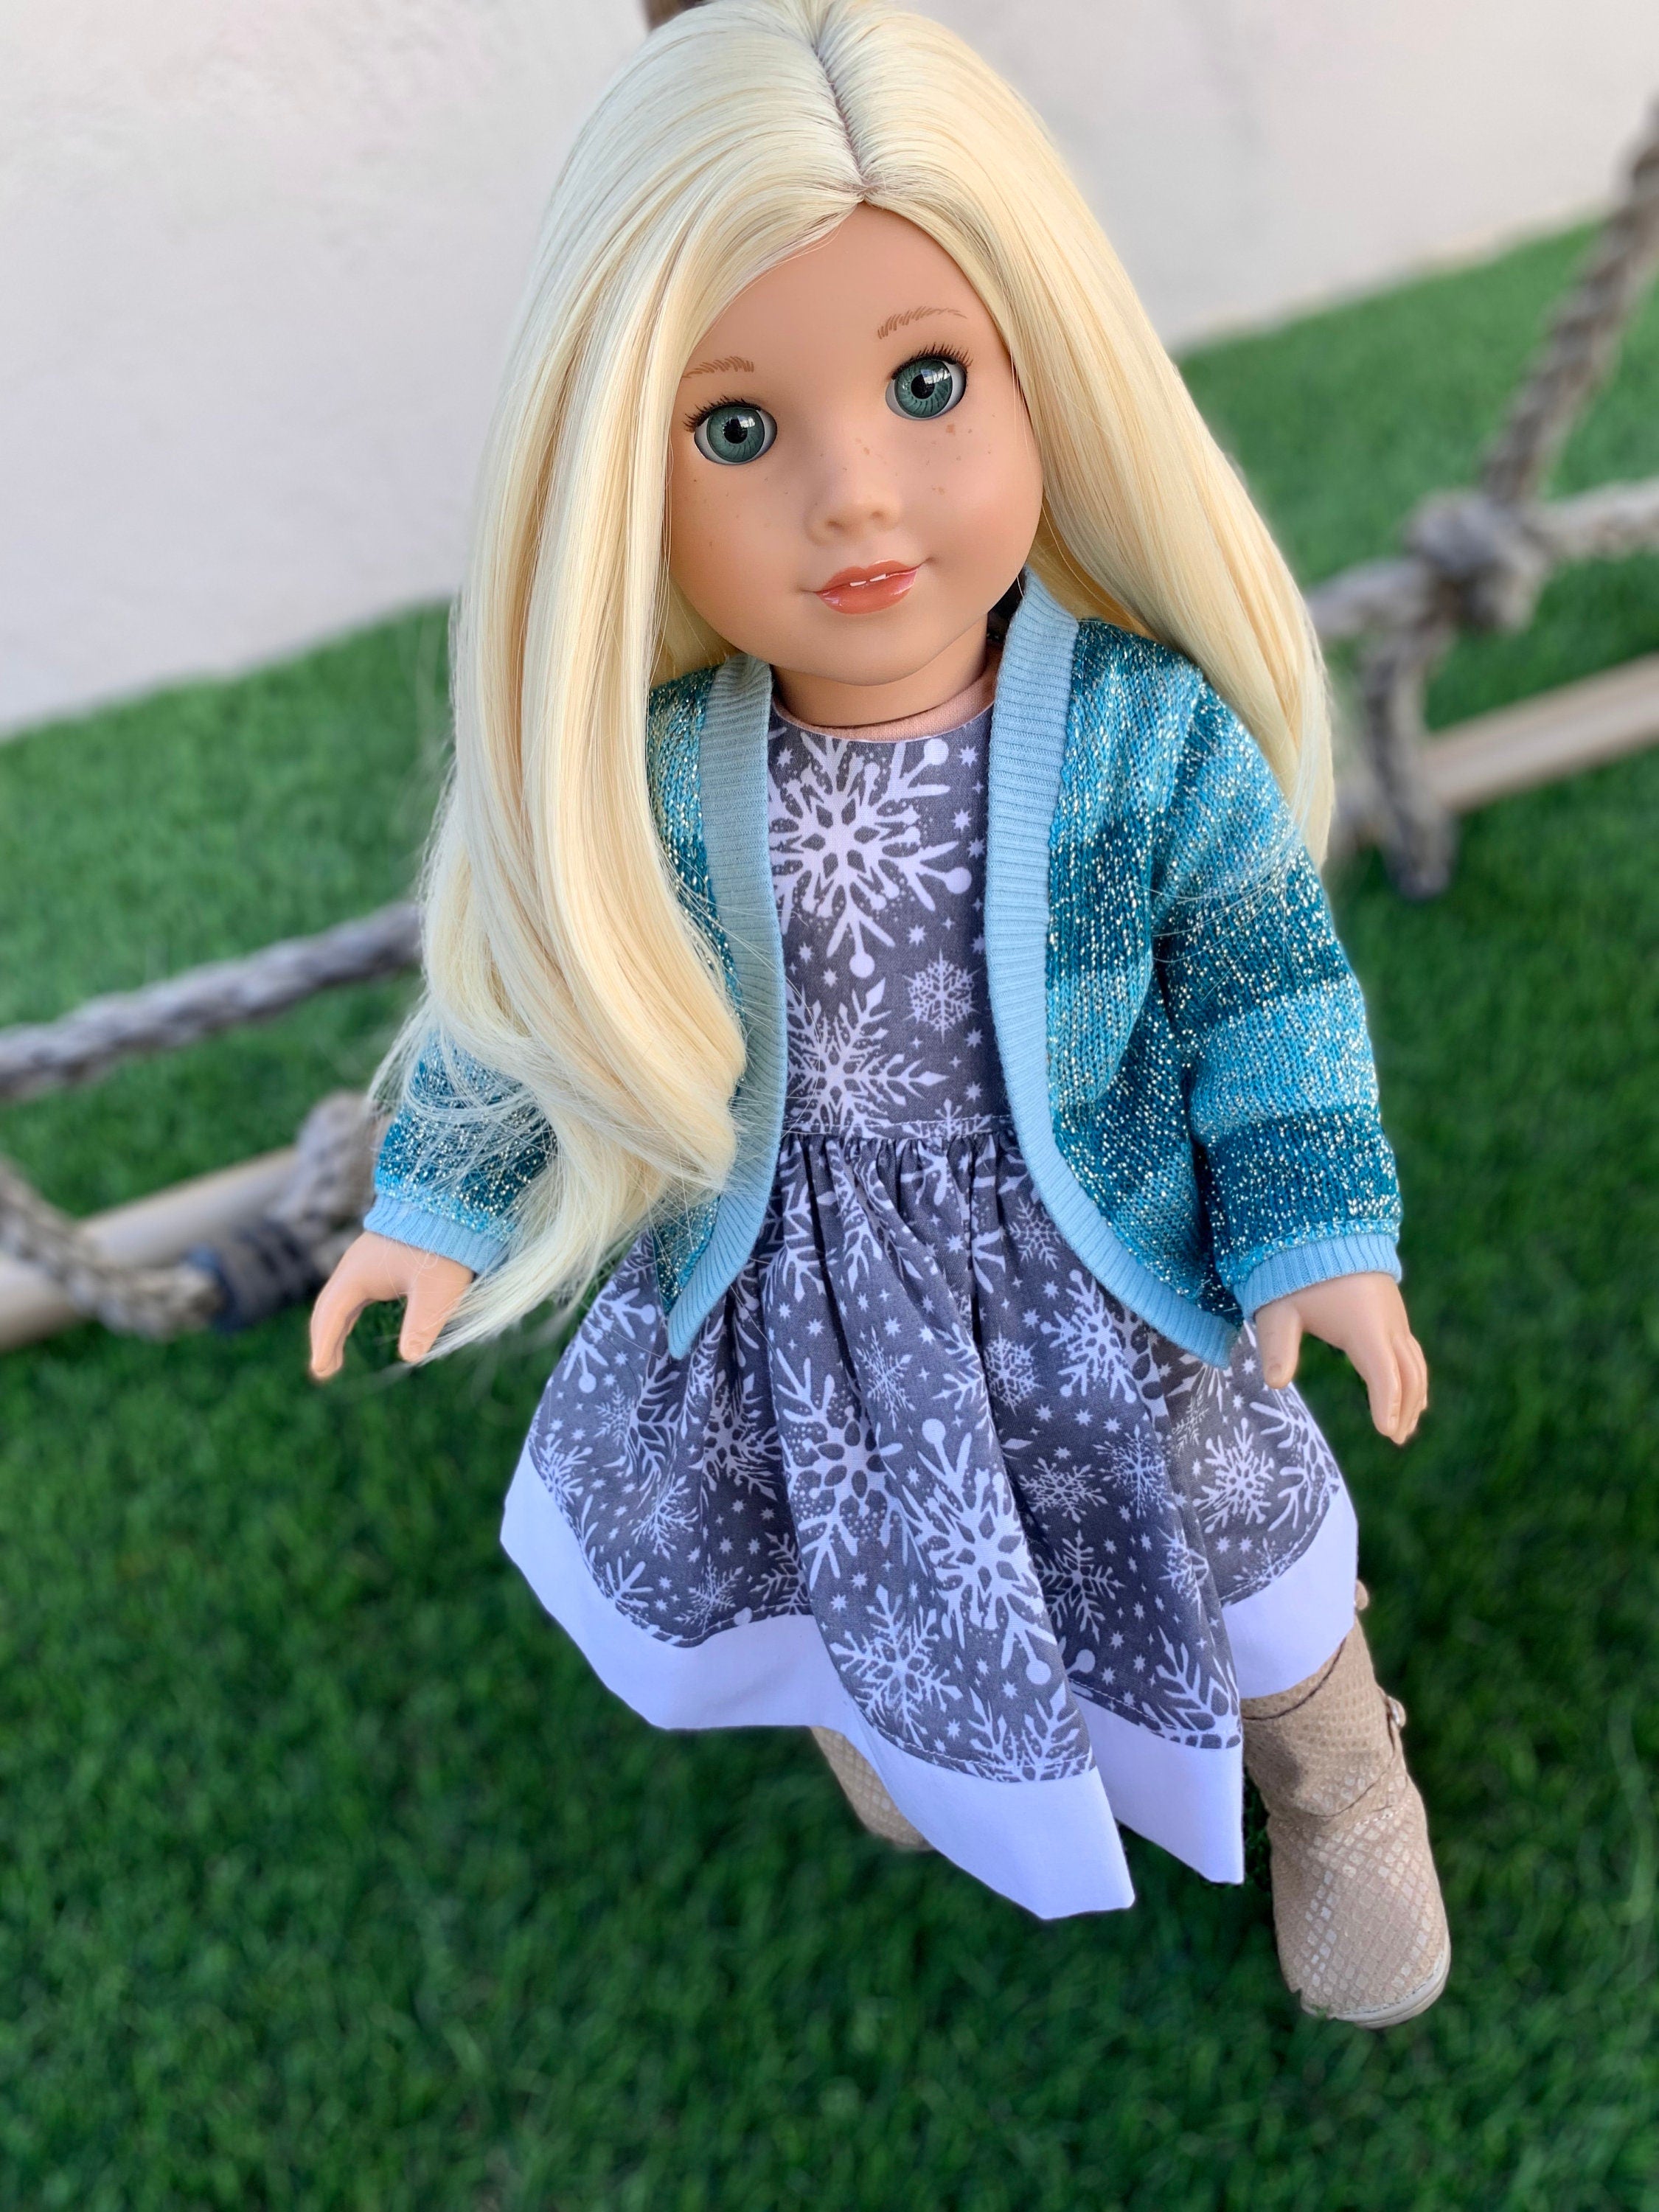 Custom doll wig for 18" American Girl Dolls - Heat Safe - Tangle Resistant - fits 10-11" head size of 18" dolls OG Blythe BJD Gotz  blonde